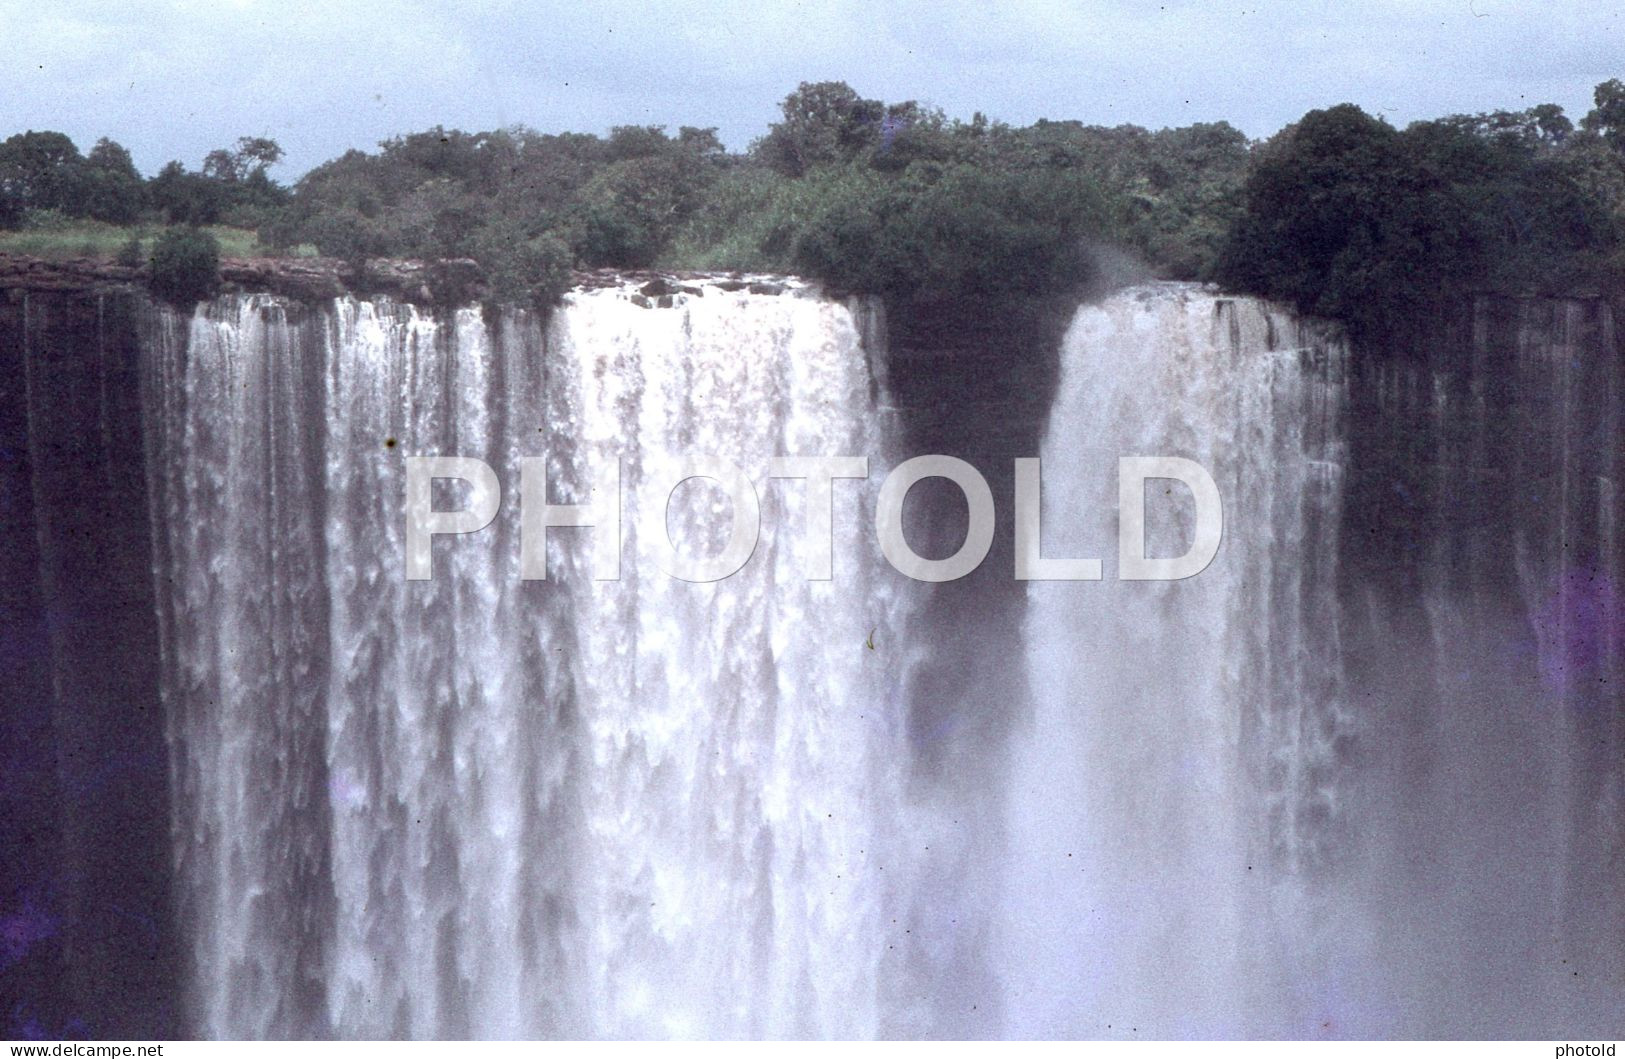 44 SLIDES SET 1968 ANGOLA AFRICA AFRIQUE ORIGINAL AMATEUR 35mm DIAPOSITIVE SLIDE Not PHOTO No FOTO NB4060 - Diapositives